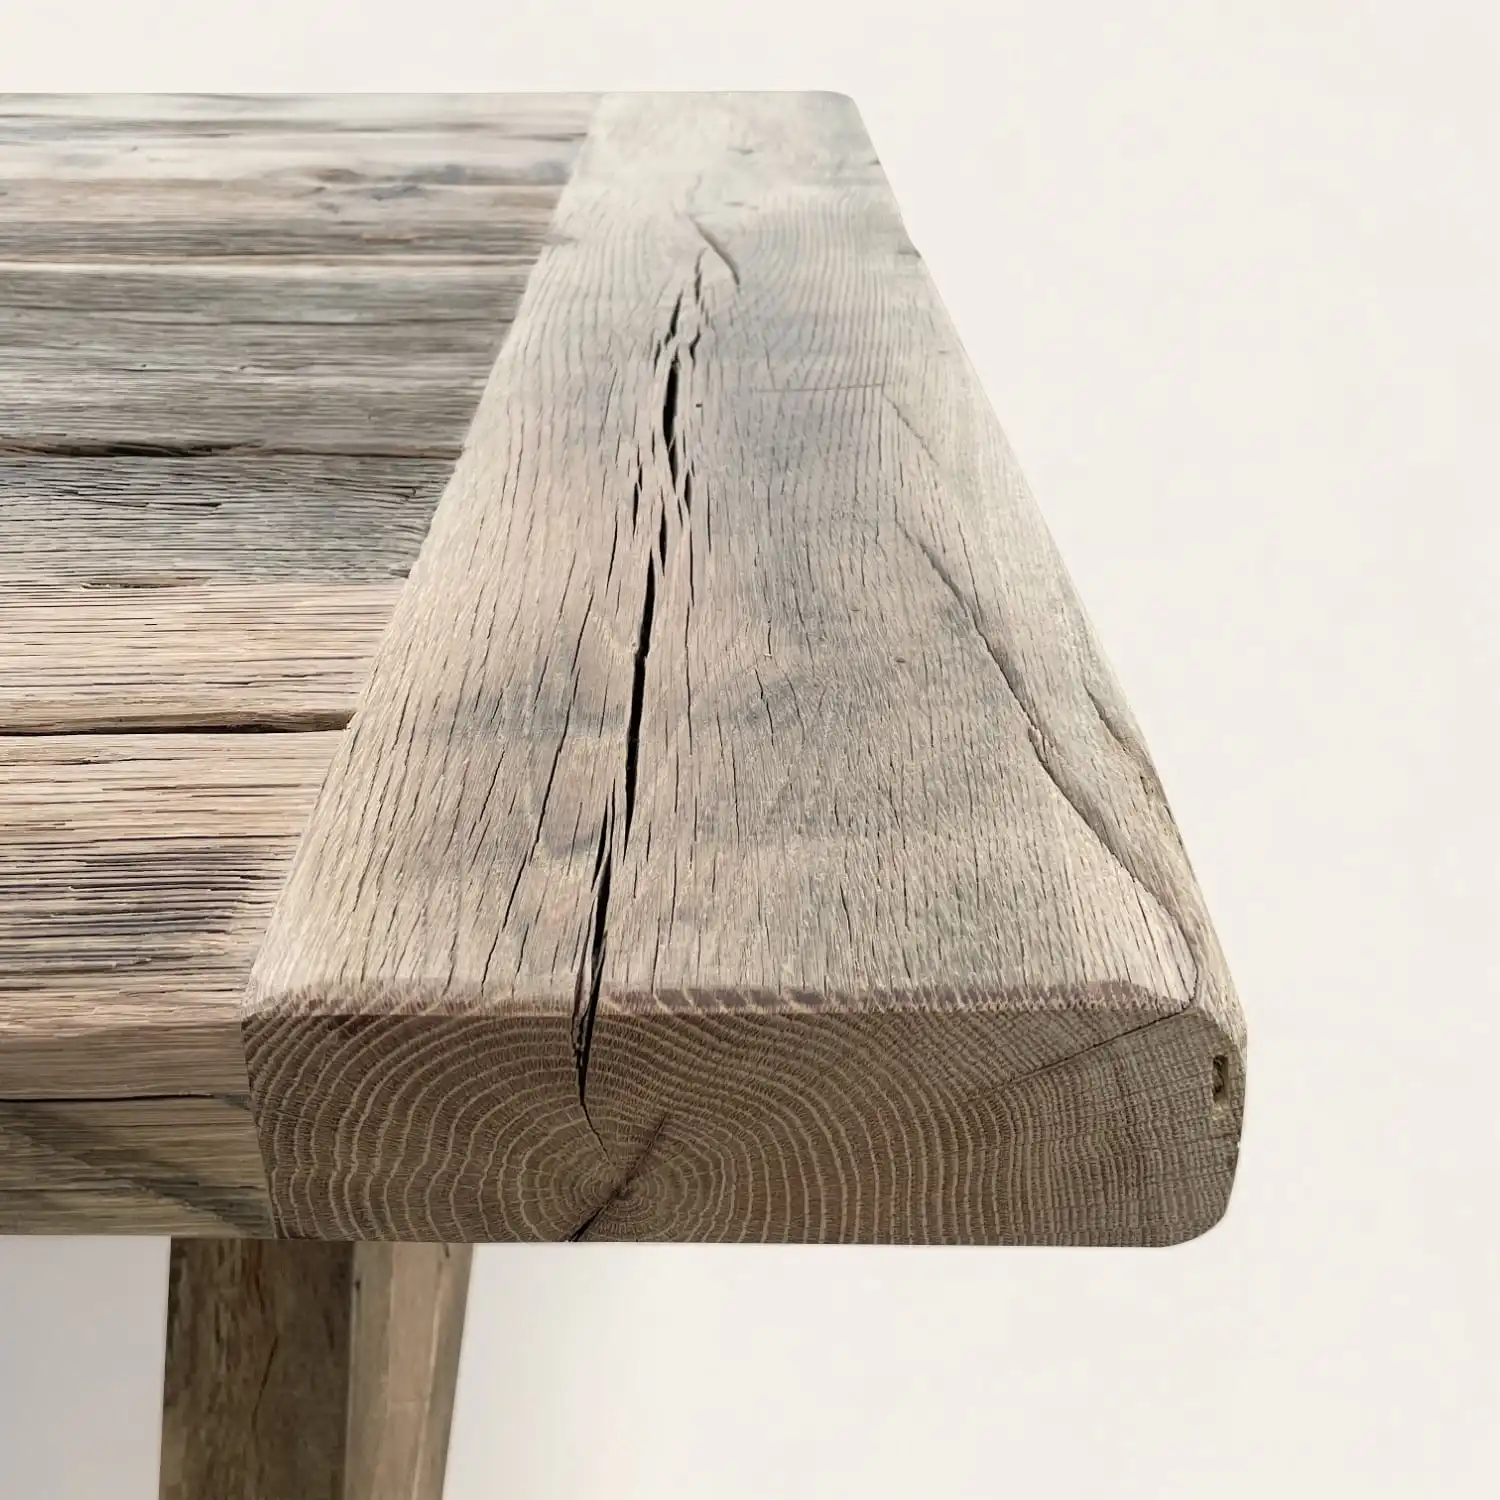  Détail de l'angle d'une table de style fermette, mettant en valeur le bois ancien avec des fissures et des motifs de croissance annuels distincts, évoquant l'histoire et la robustesse naturelle du matériau. 